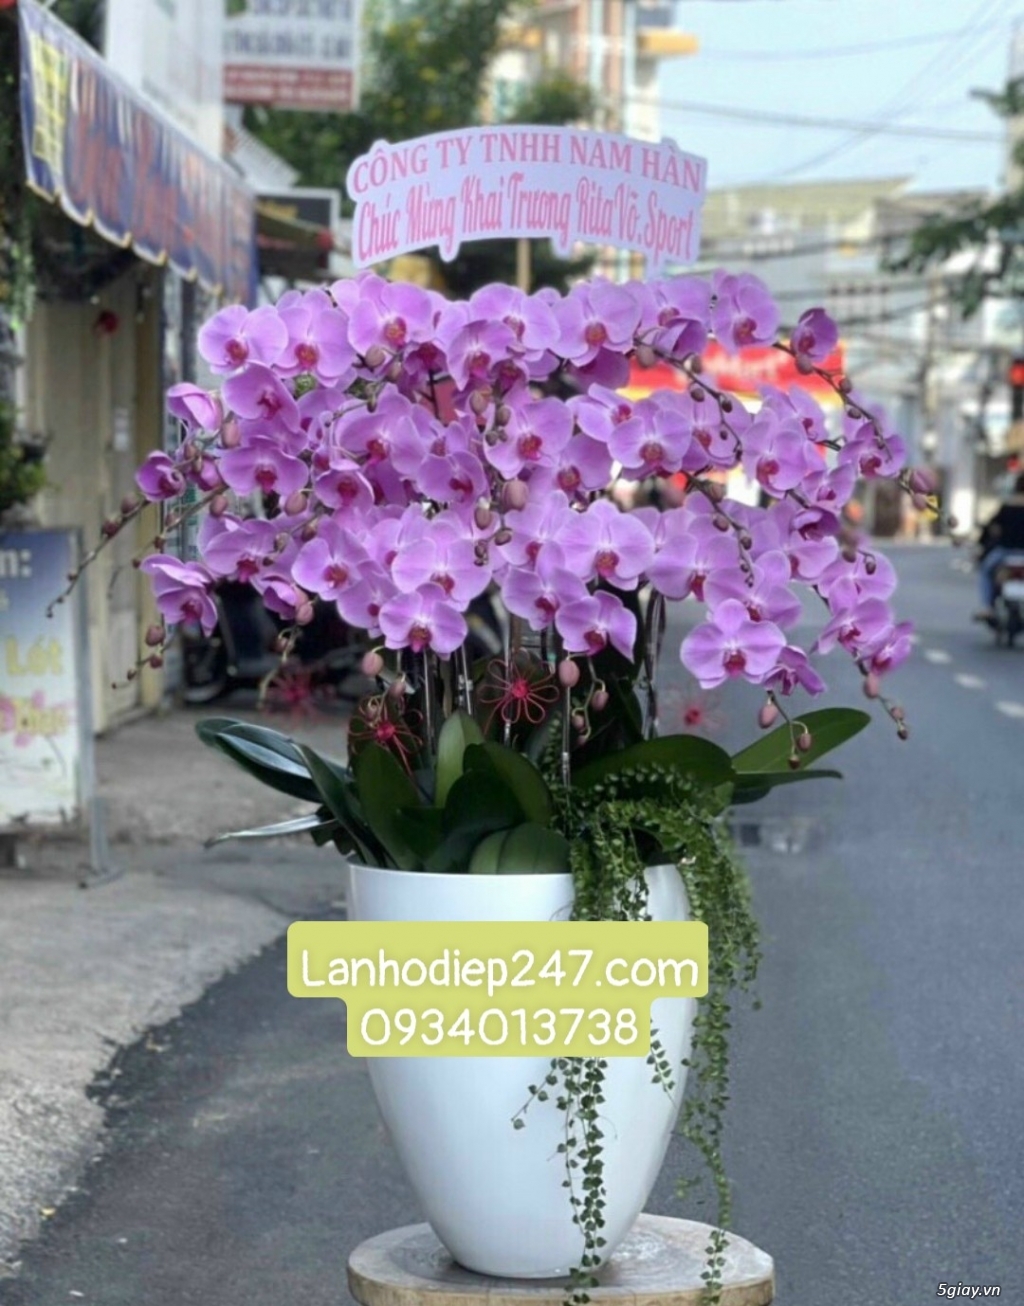 Shop hoa tươi Lan Hồ Điệp 247 tại Đức Hòa Long An 0934013738 - 11